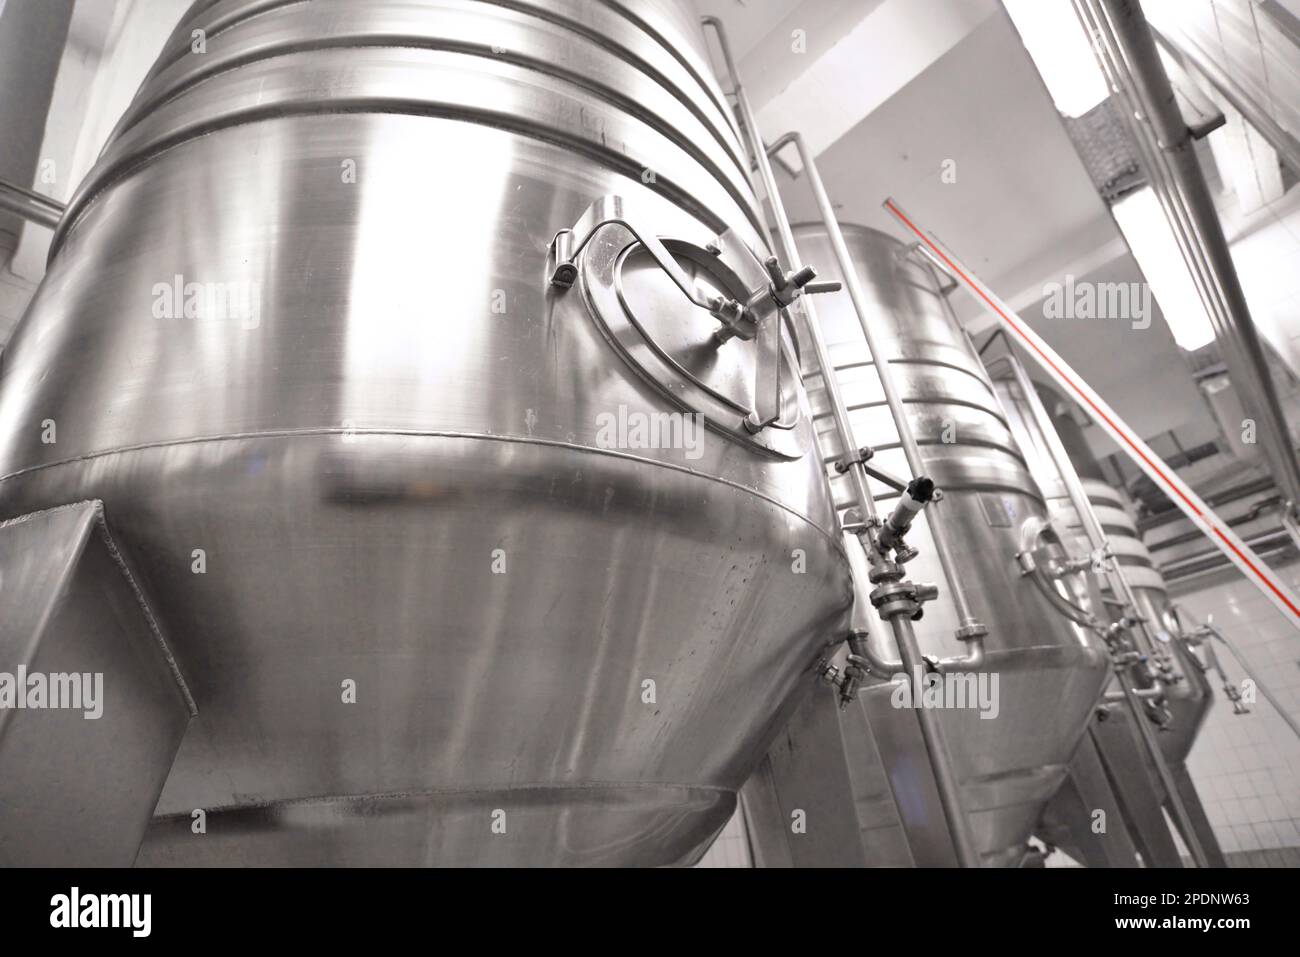 industria alimentare birreria - serbatoi e impianti per la produzione di birra Foto Stock